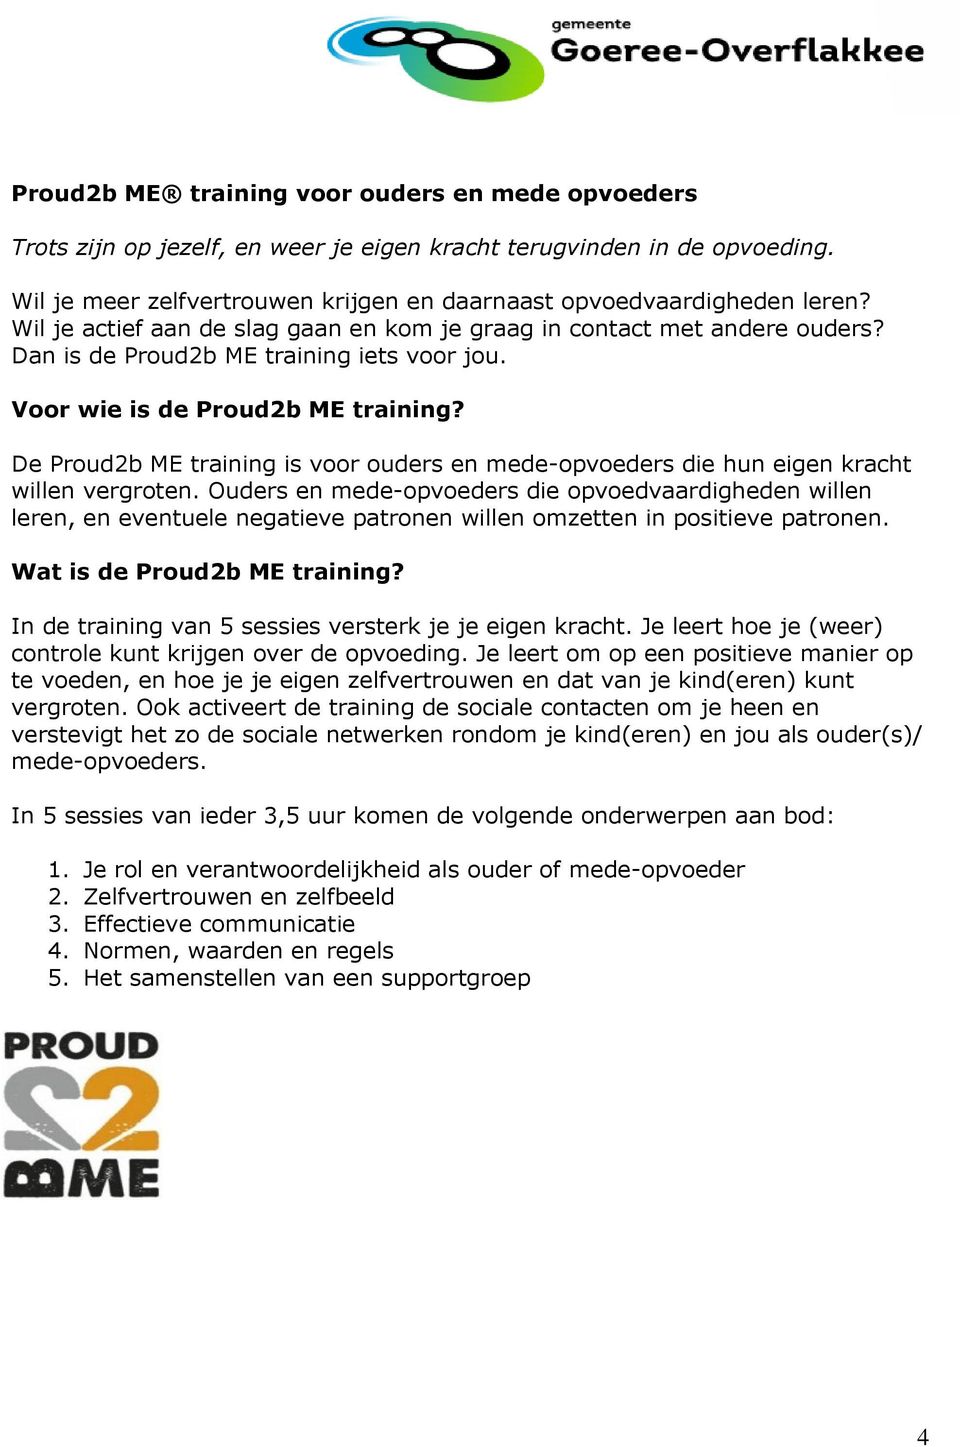 De Proud2b ME training is voor ouders en mede-opvoeders die hun eigen kracht willen vergroten.